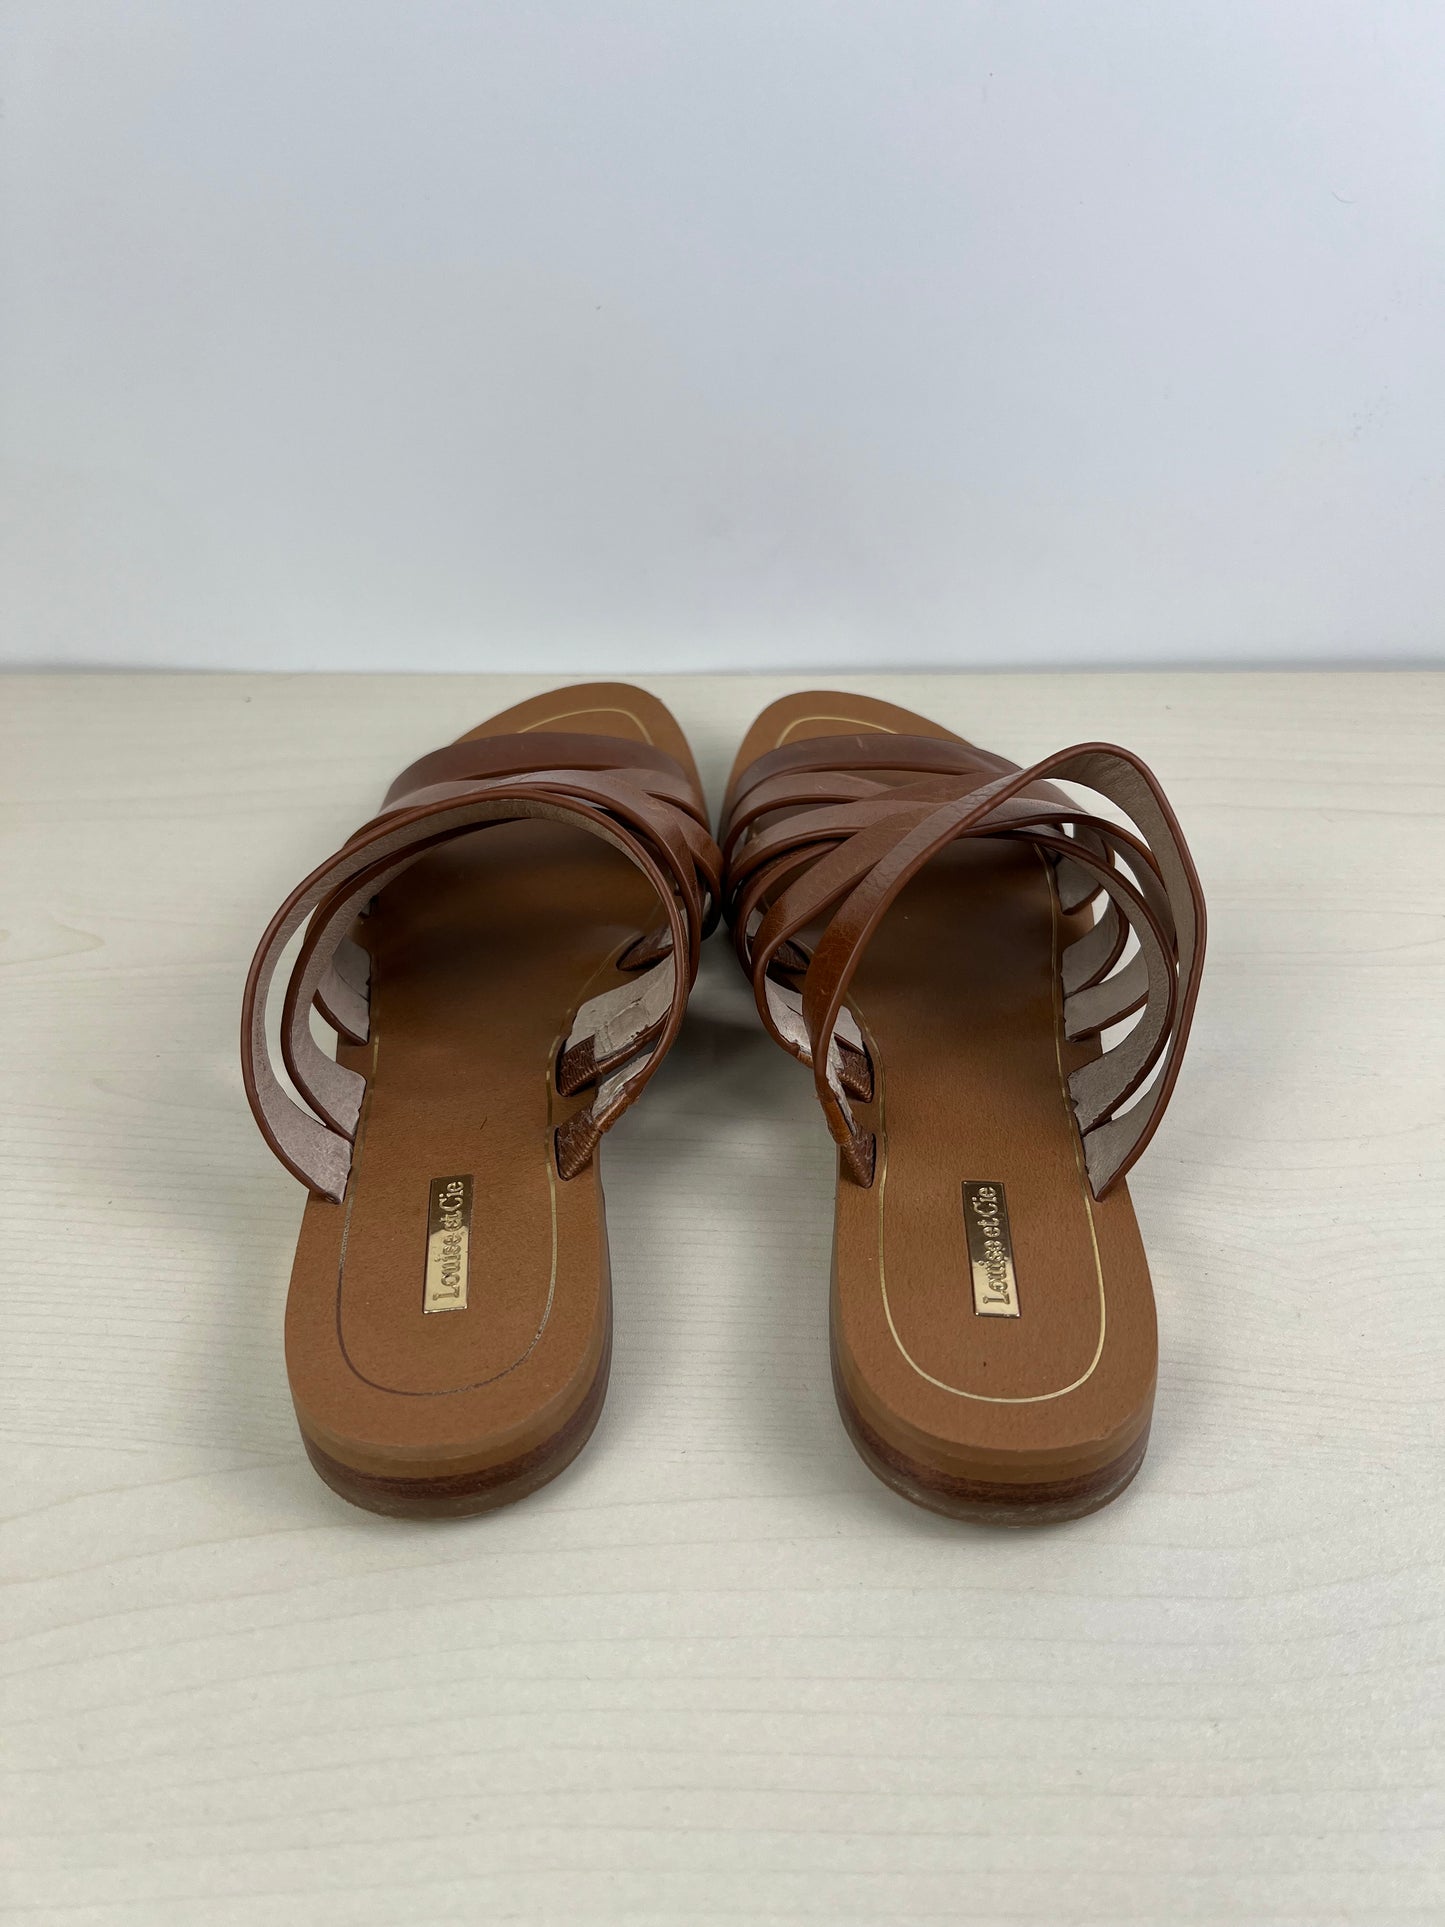 Sandals Flats By Louise Et Cie  Size: 7.5